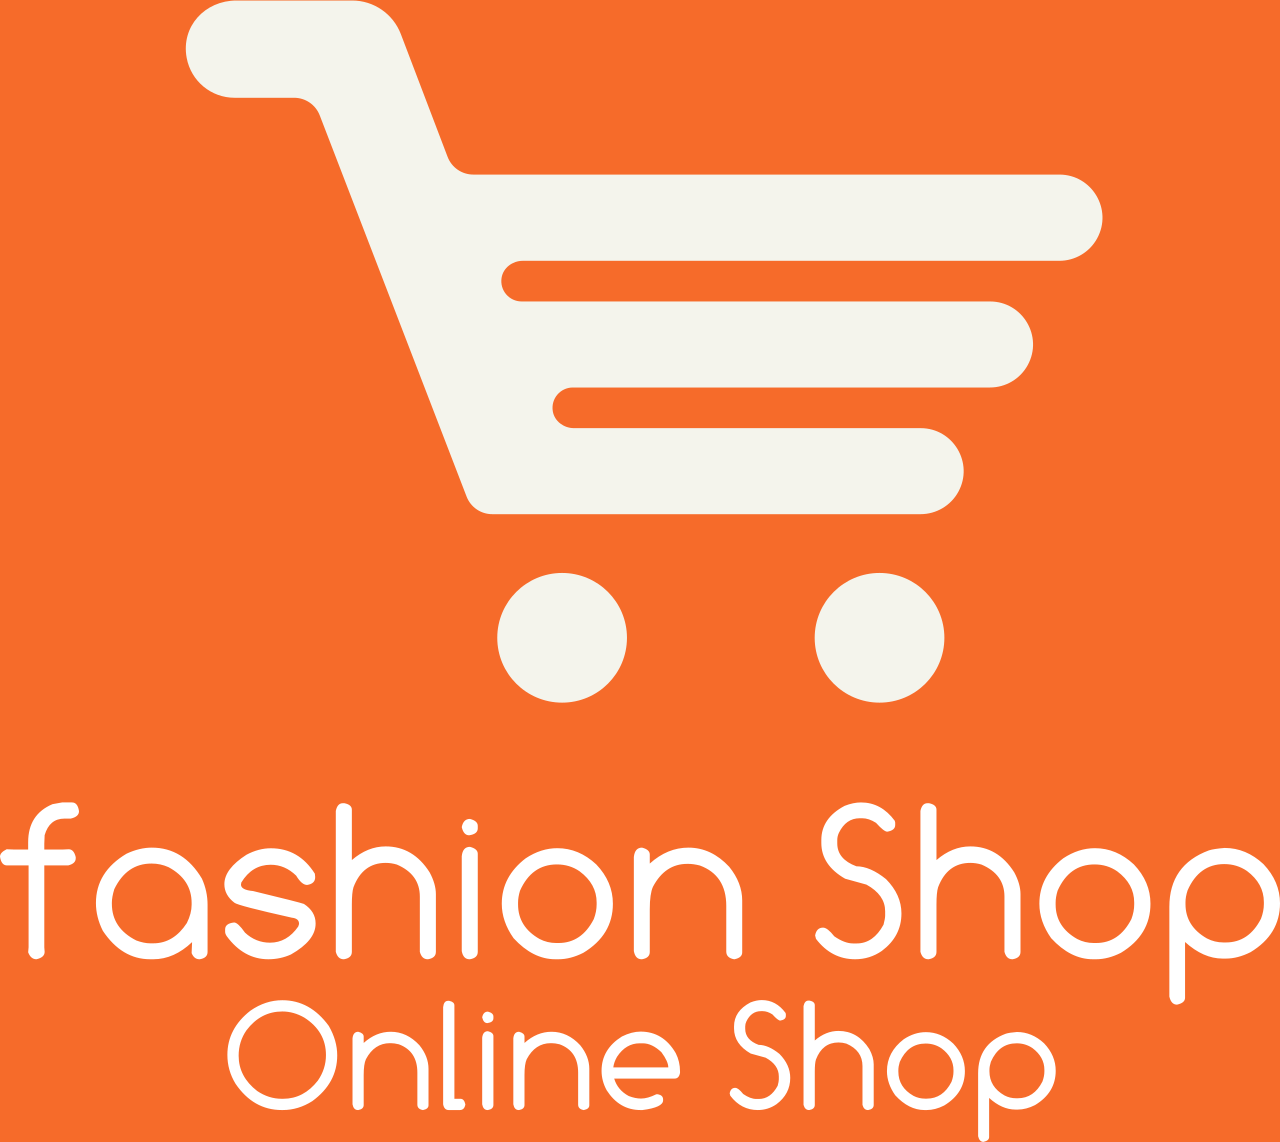 fashion Shop's web page